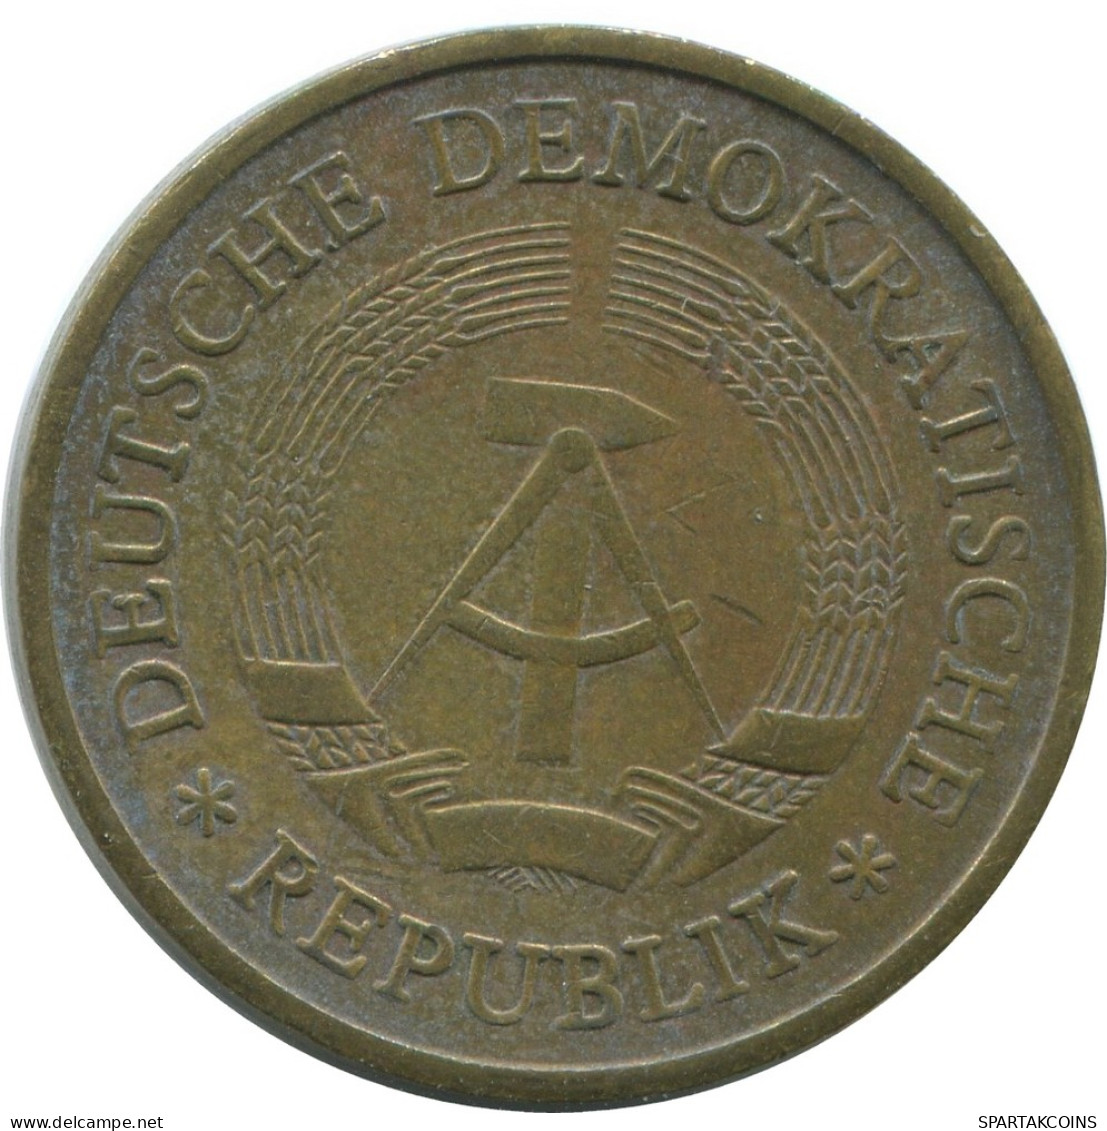 20 PFENNIG 1971 DDR EAST GERMANY Coin #AE117.U - 20 Pfennig